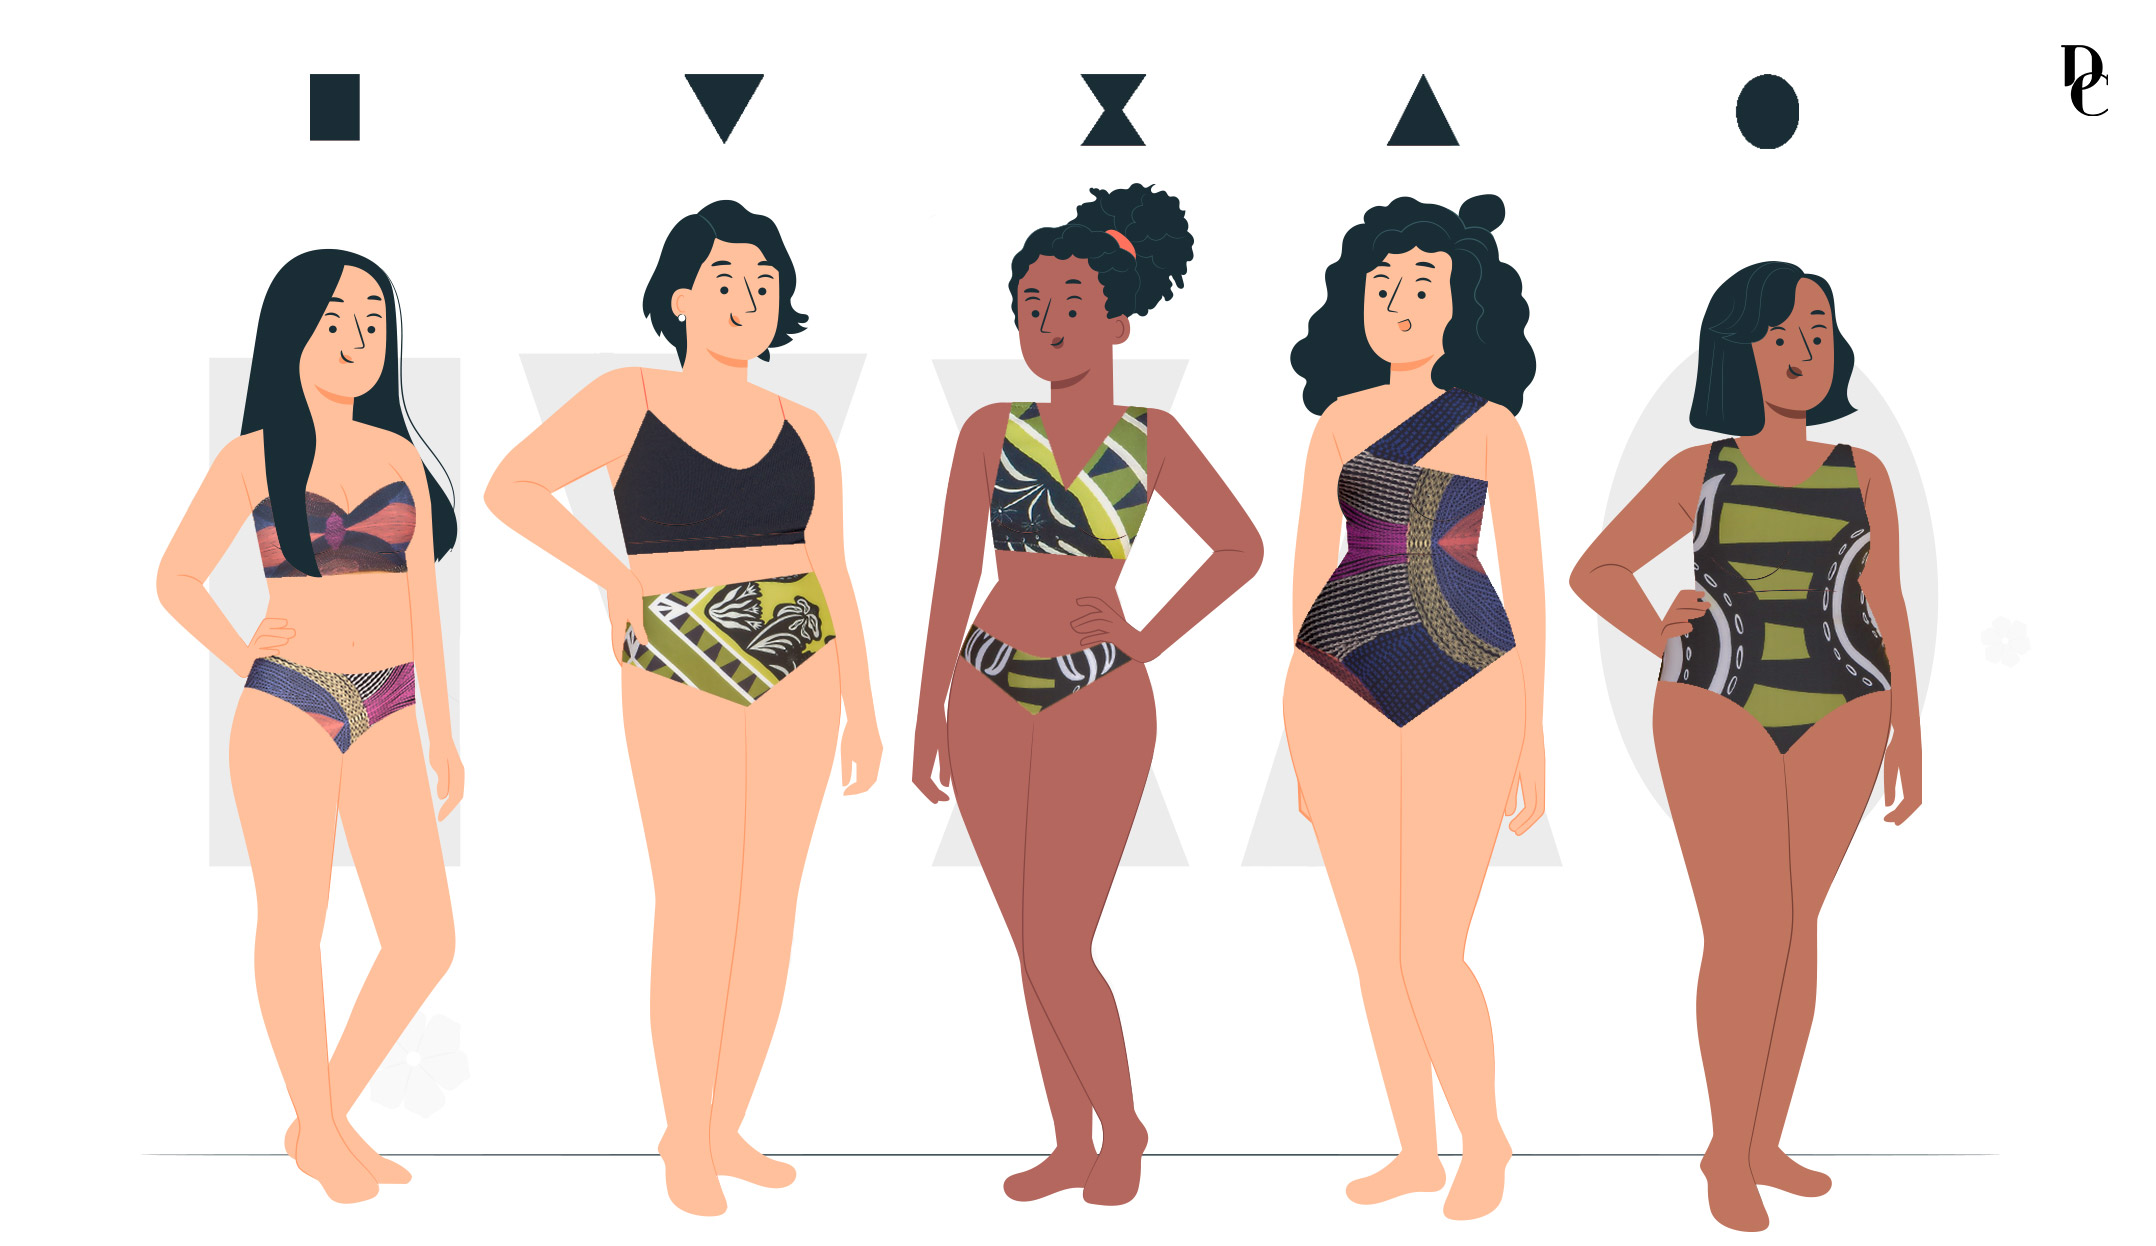 ilustração de mulheres com diferentes formatos de corpo: retângulo, triângulo invertido, ampulheta, triangulo e oval.